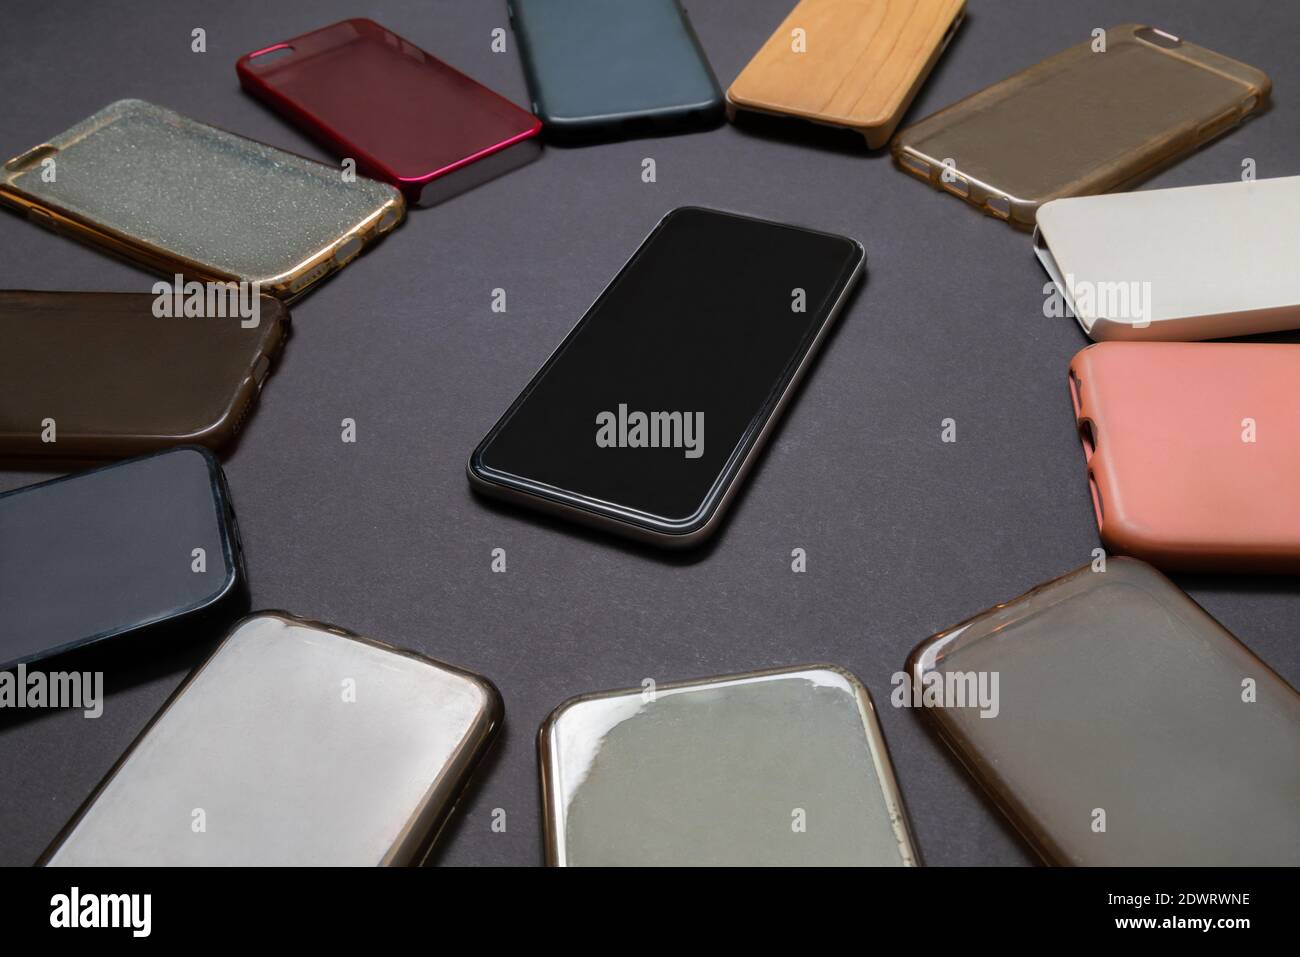 Pila di plastica multicolore torna copertine per i telefoni cellulari su sfondo nero con un telefono sul lato Foto Stock